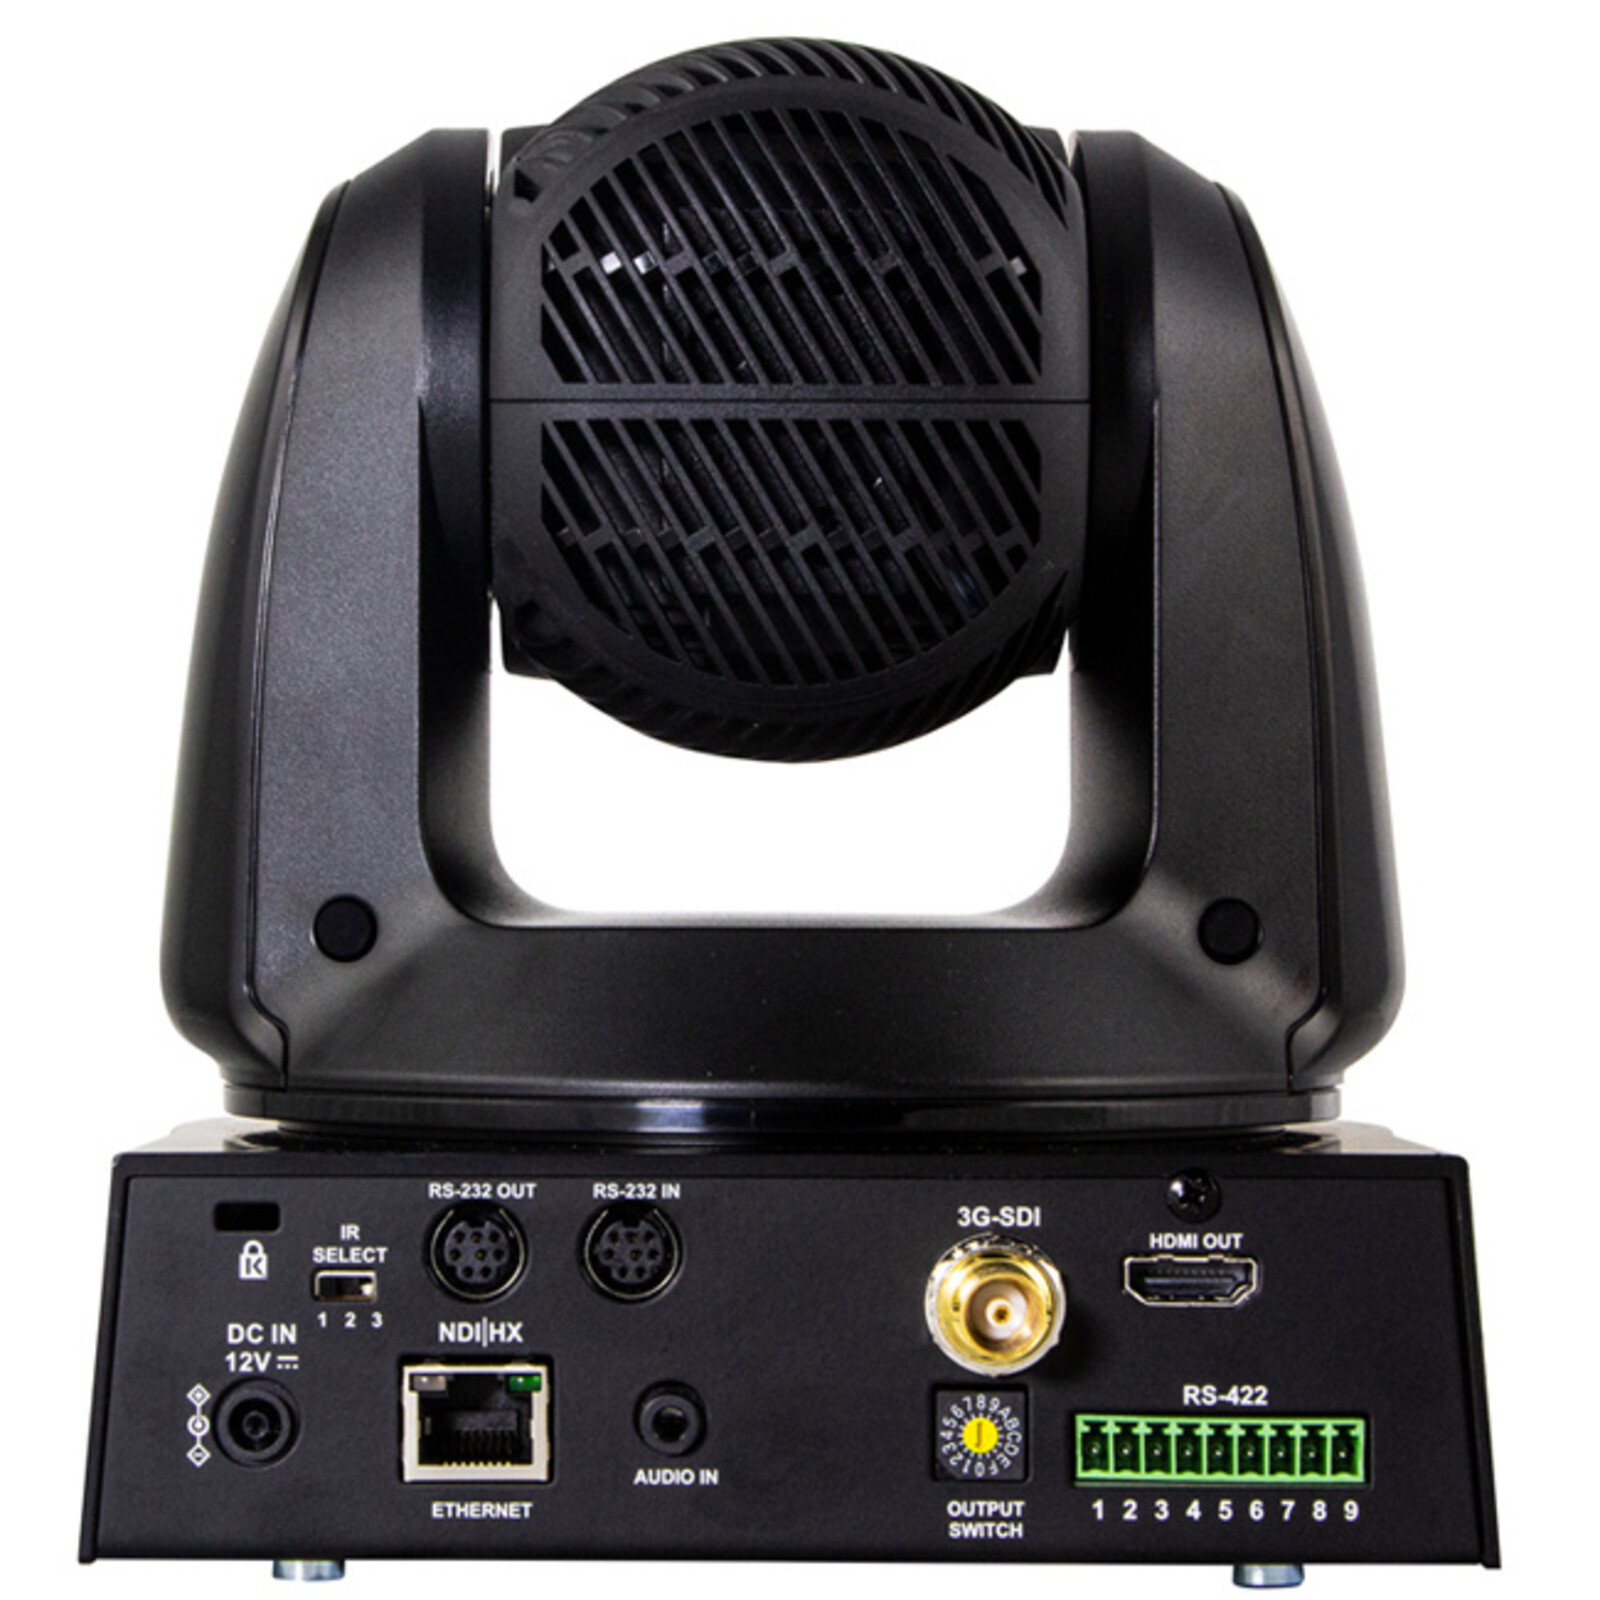 Marshall 4K (UHD30) NDI PTZ Camera with 4.8mm-120mm 25x Zoom Lens – 3G-SDI, HDMI & NDI|HX3 Outputs